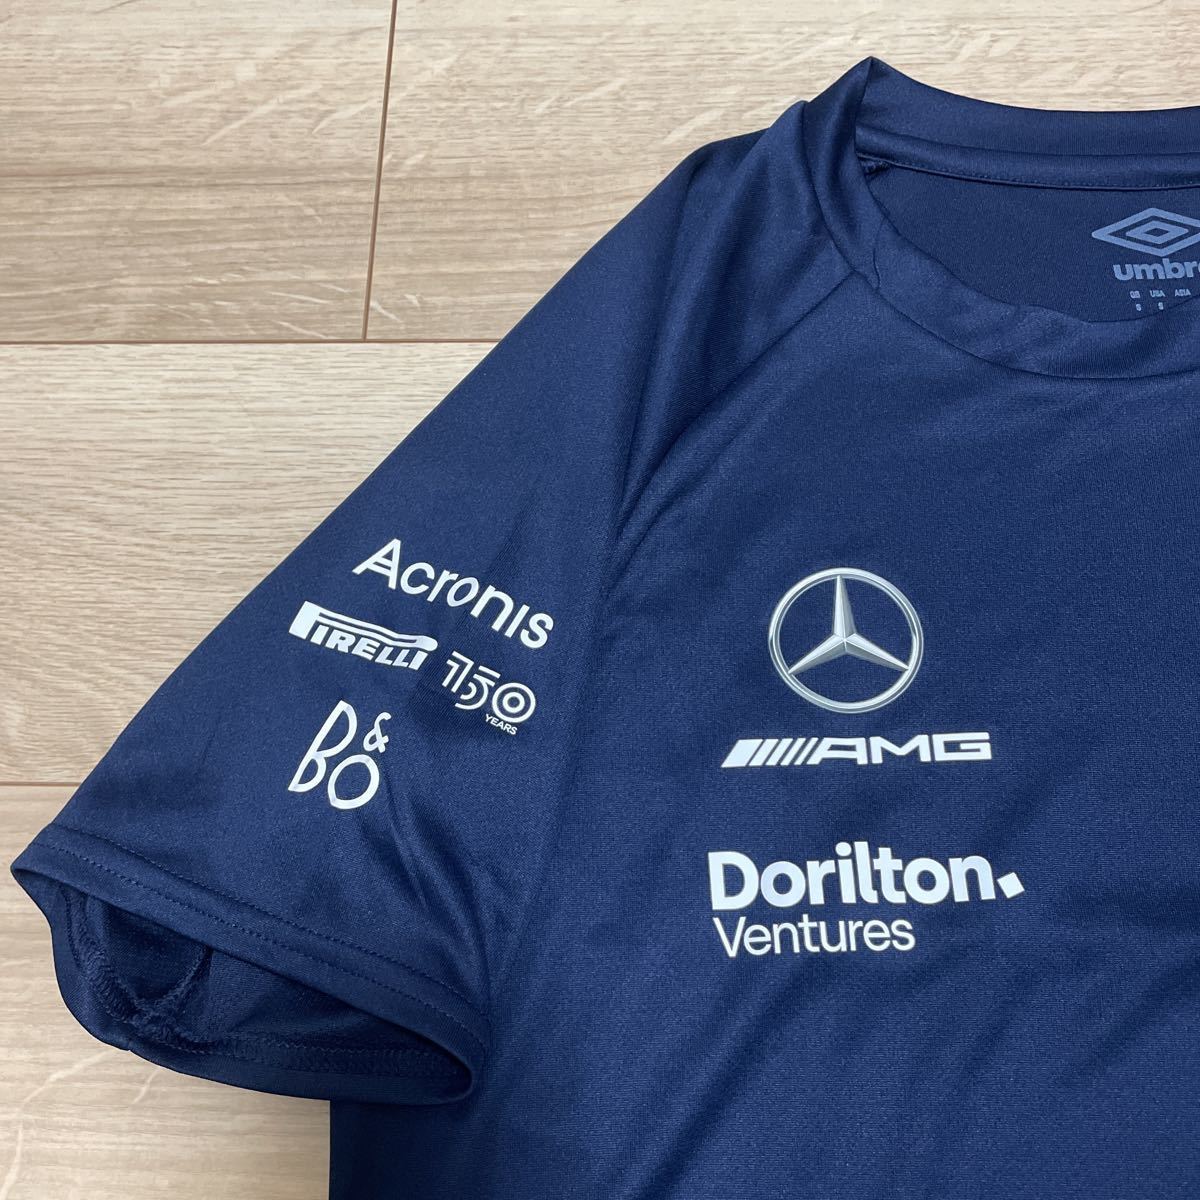 2022 ウィリアムズ レーシングF1 チーム支給品 Tシャツ Sサイズ 日本M 